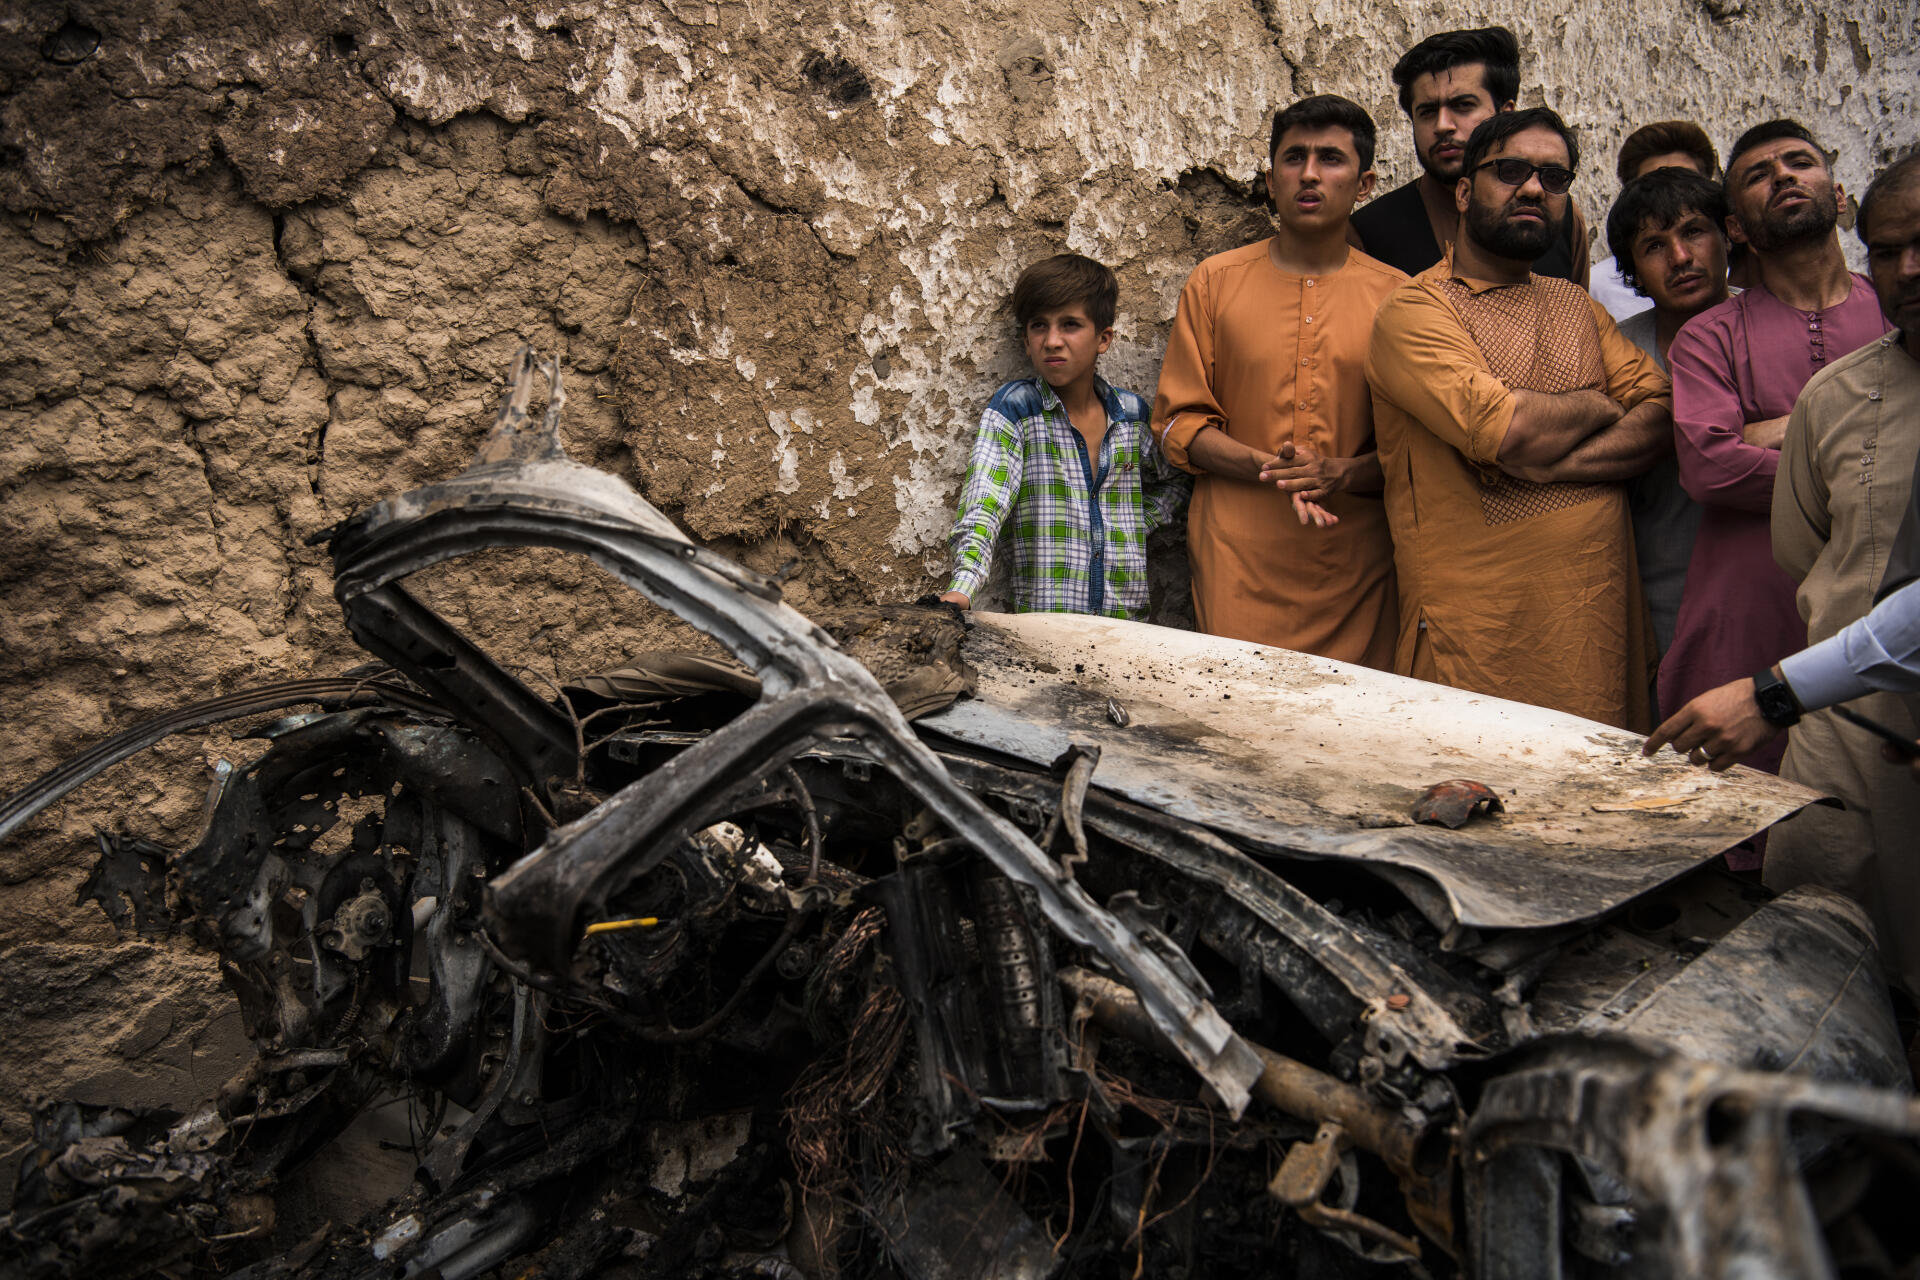 Les restes du véhicule frappé vers 17 heures le 29 août 2021 par un drone américain. Des responsables américains ont déclaré que la frappe visait un véhicule dans lequel se trouvait un kamikaze qui prévoyait d’attaquer l’aéroport international Hamid-Karzai. Dix personnes de la famille, dont huit enfants ont été tués, ainsi que le conducteur du véhicule. Kaboul, le 30 août 2021.